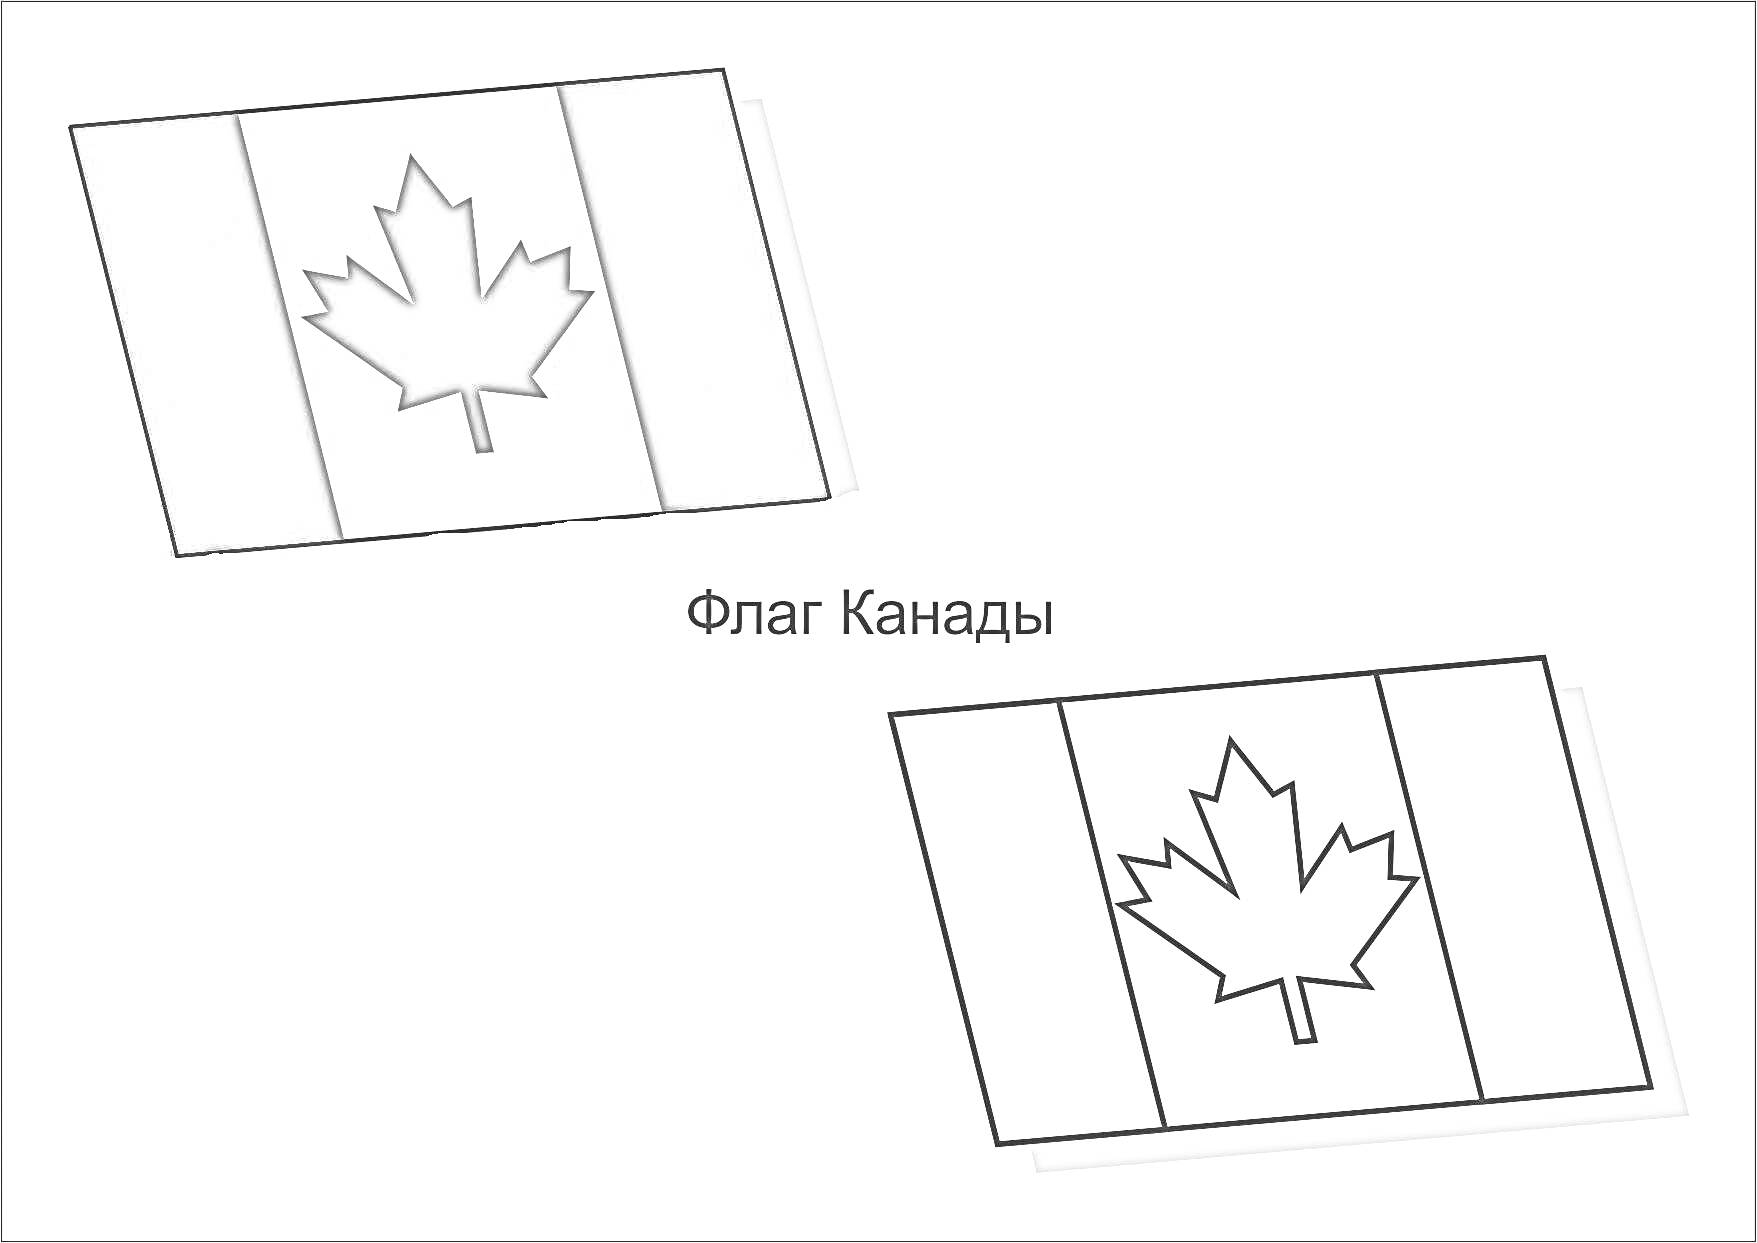 Раскраска Флаг Канады, два изображения флага Канады - одно в цвете, другое как раскраска, текст 